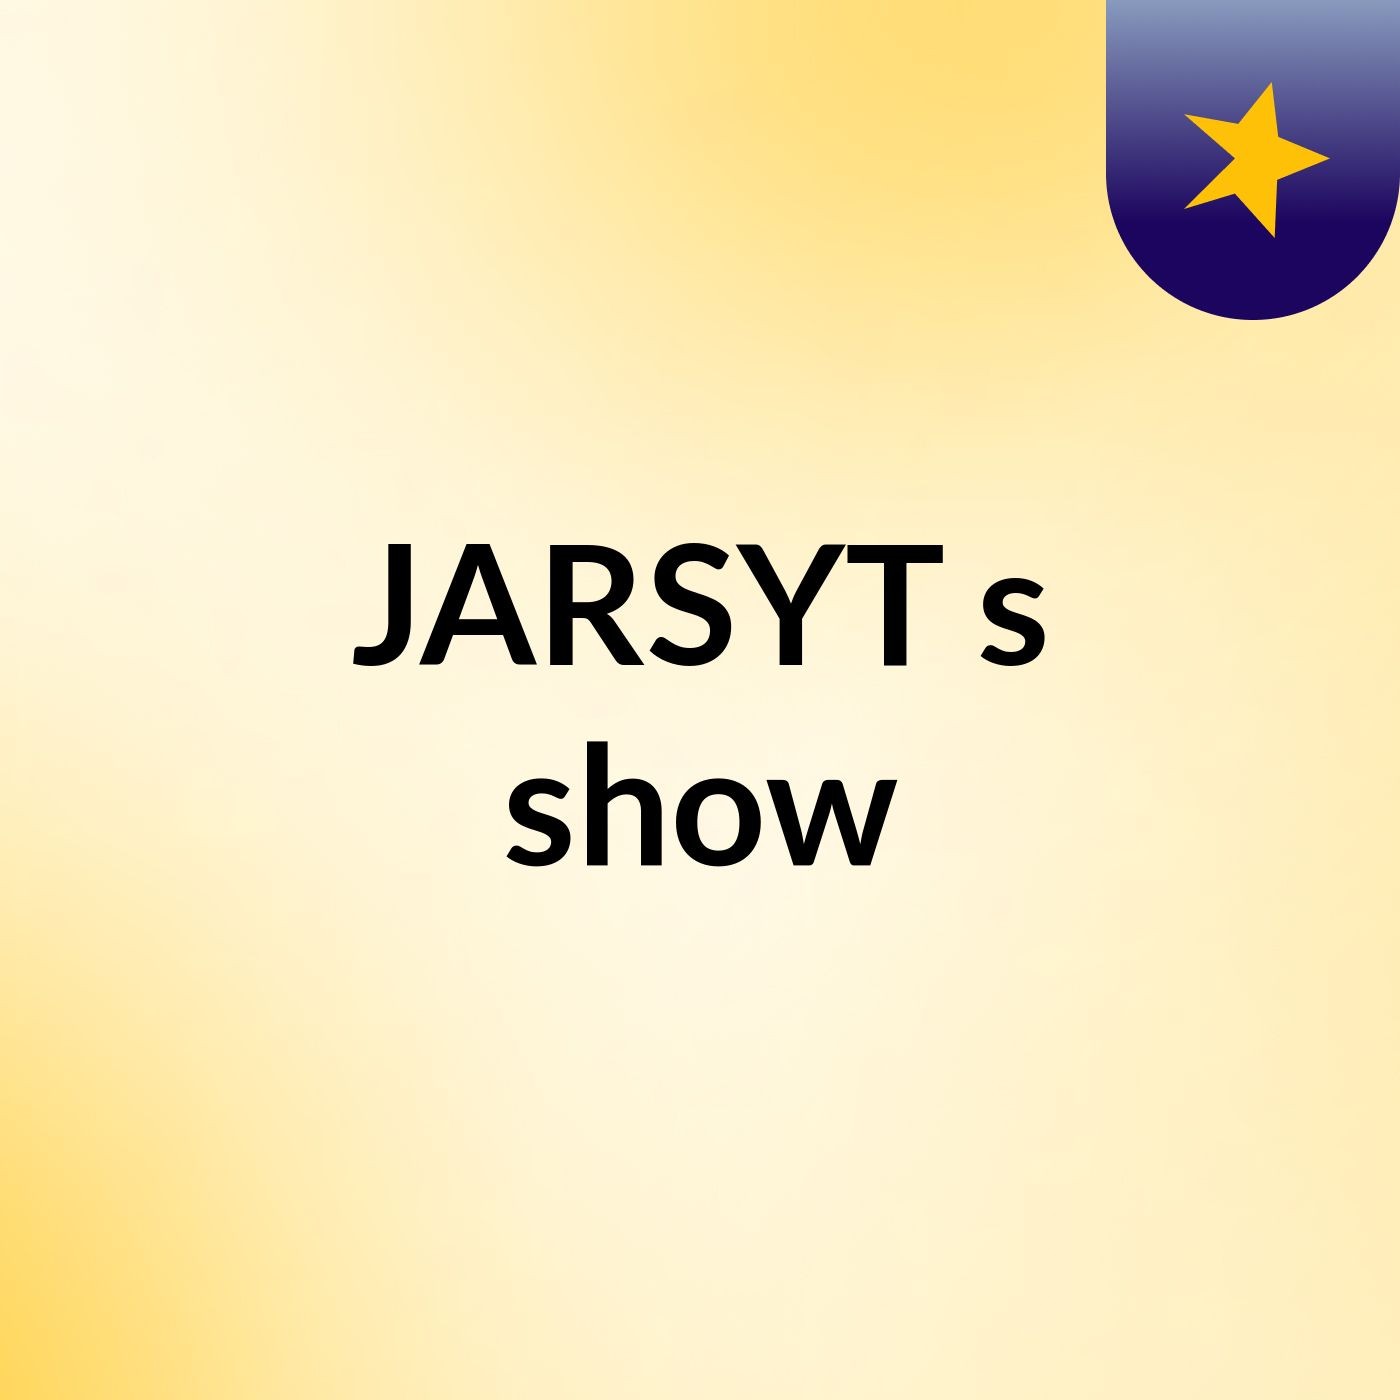 JARSYT's show